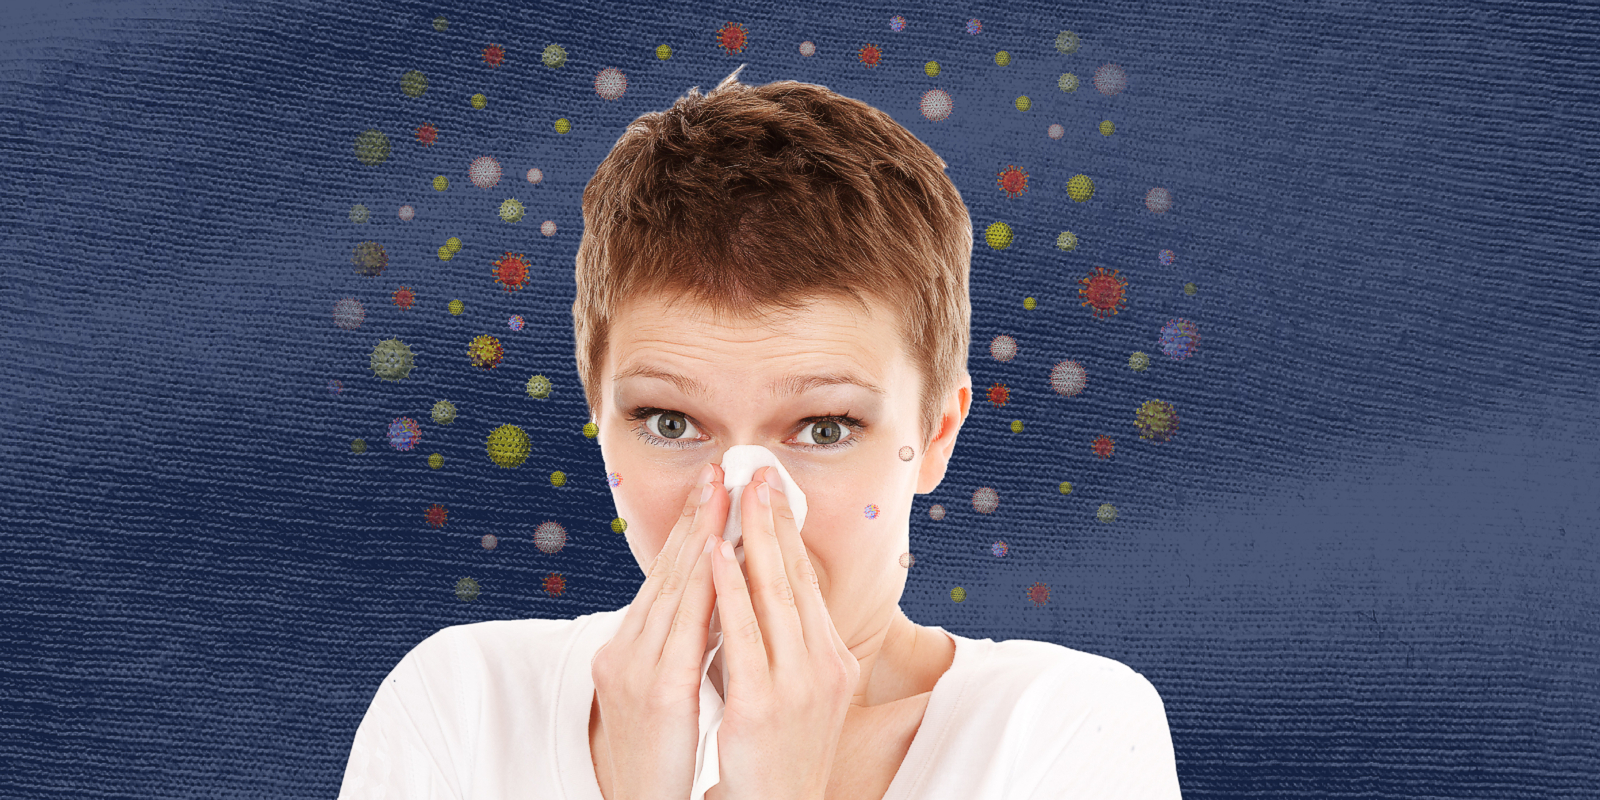 Blogbeitrag - Matratzen uind Allergien